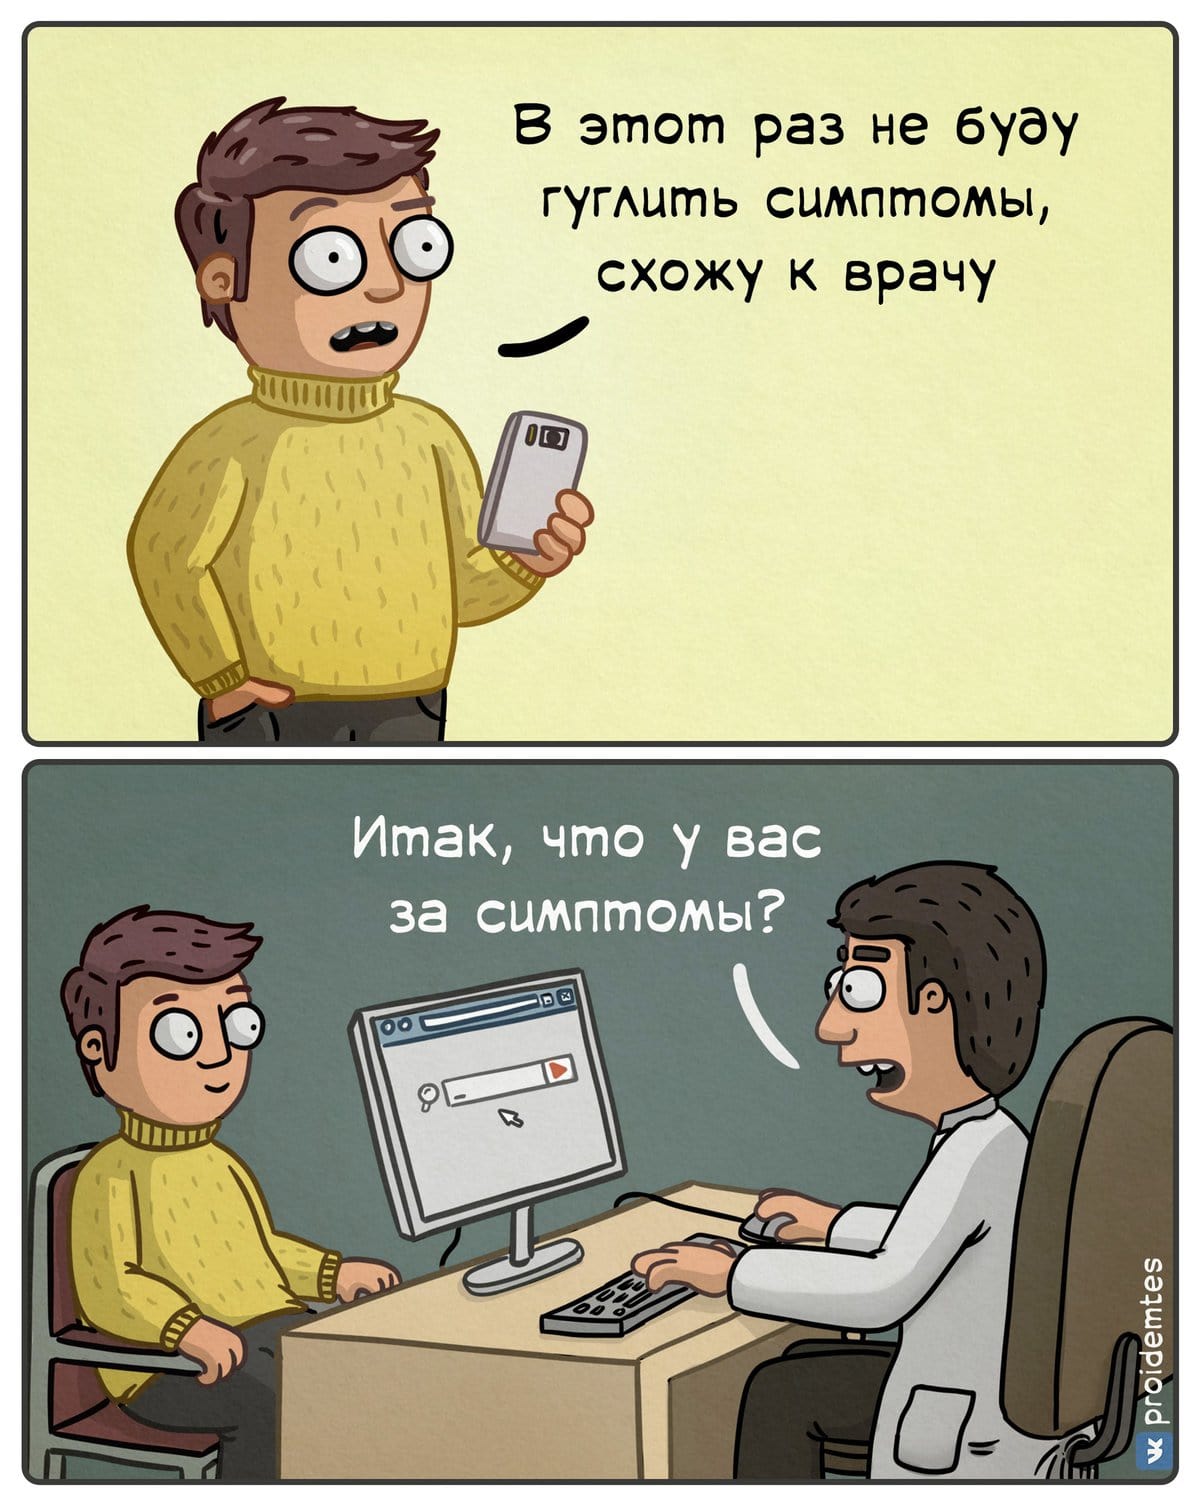 18 юморных комиксов от художника из Москвы, который любит обыгрывать бытовые ситуации с нетипичной стороны 67